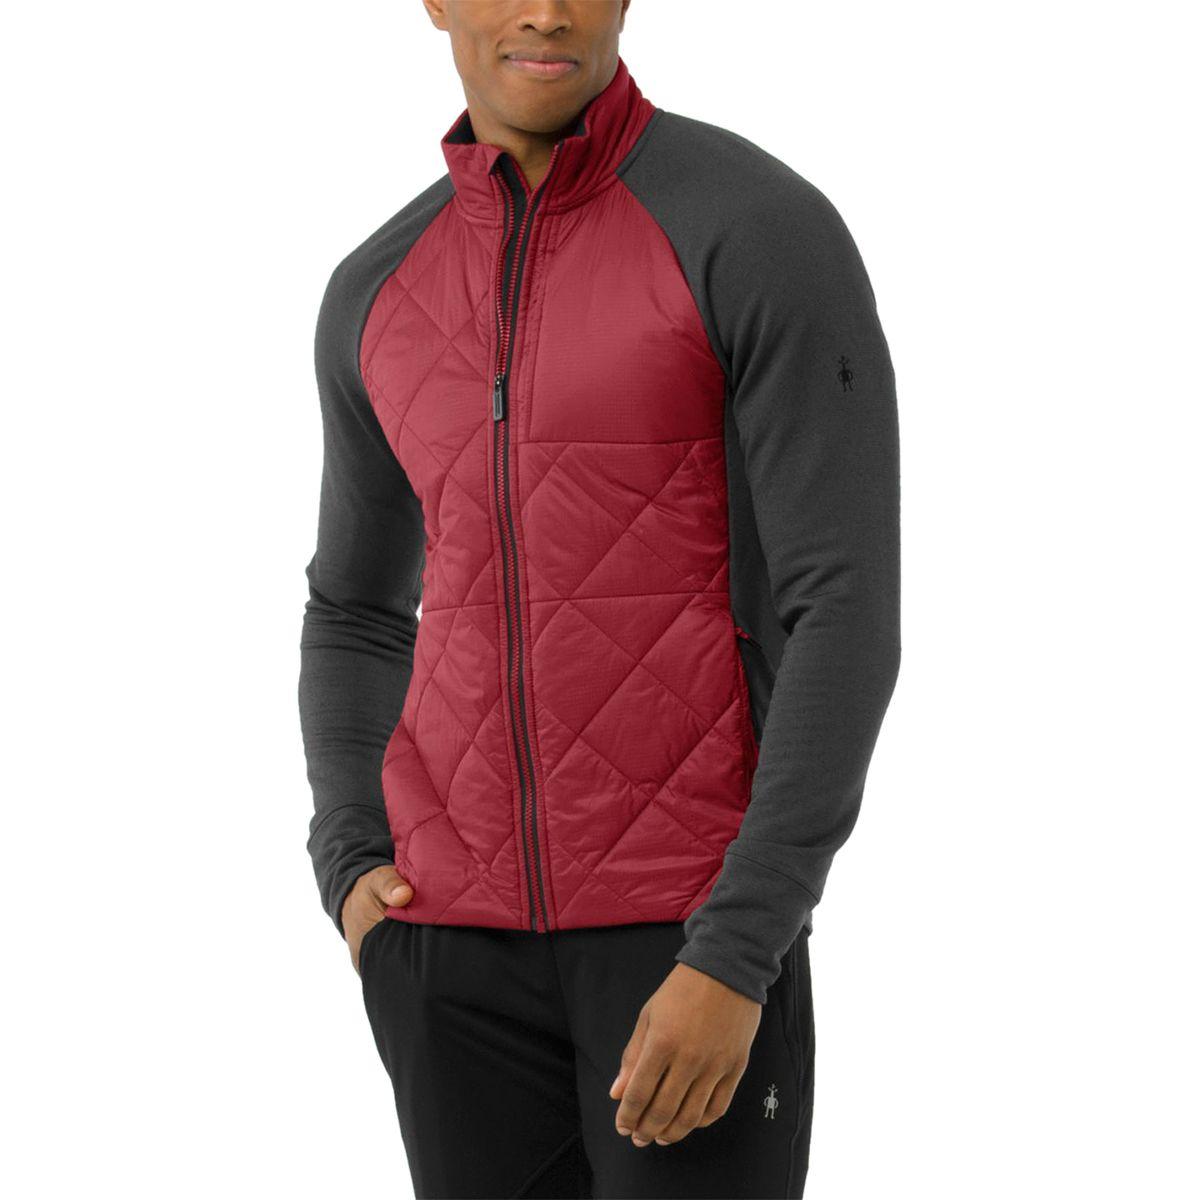 Smartwool Wool Smartloft 120 Jacket in Red for Men - Lyst